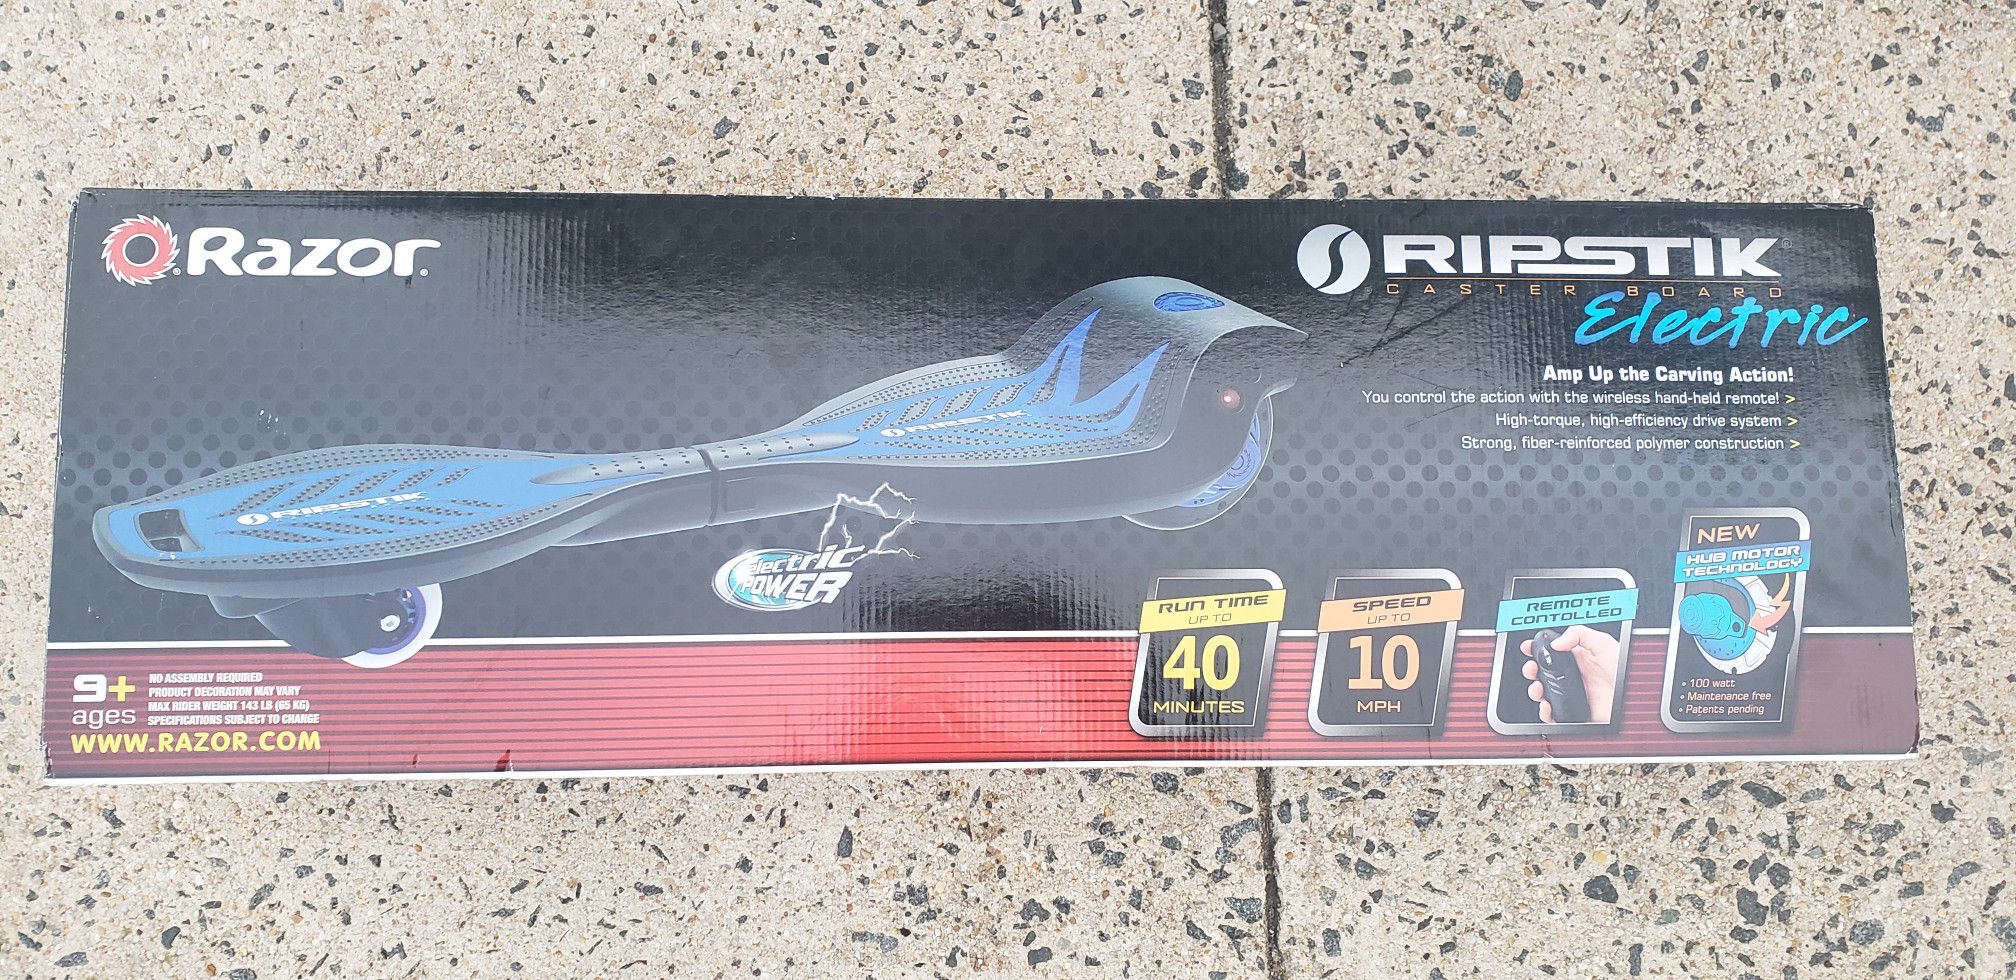 Ripstik Electric Skateboard.